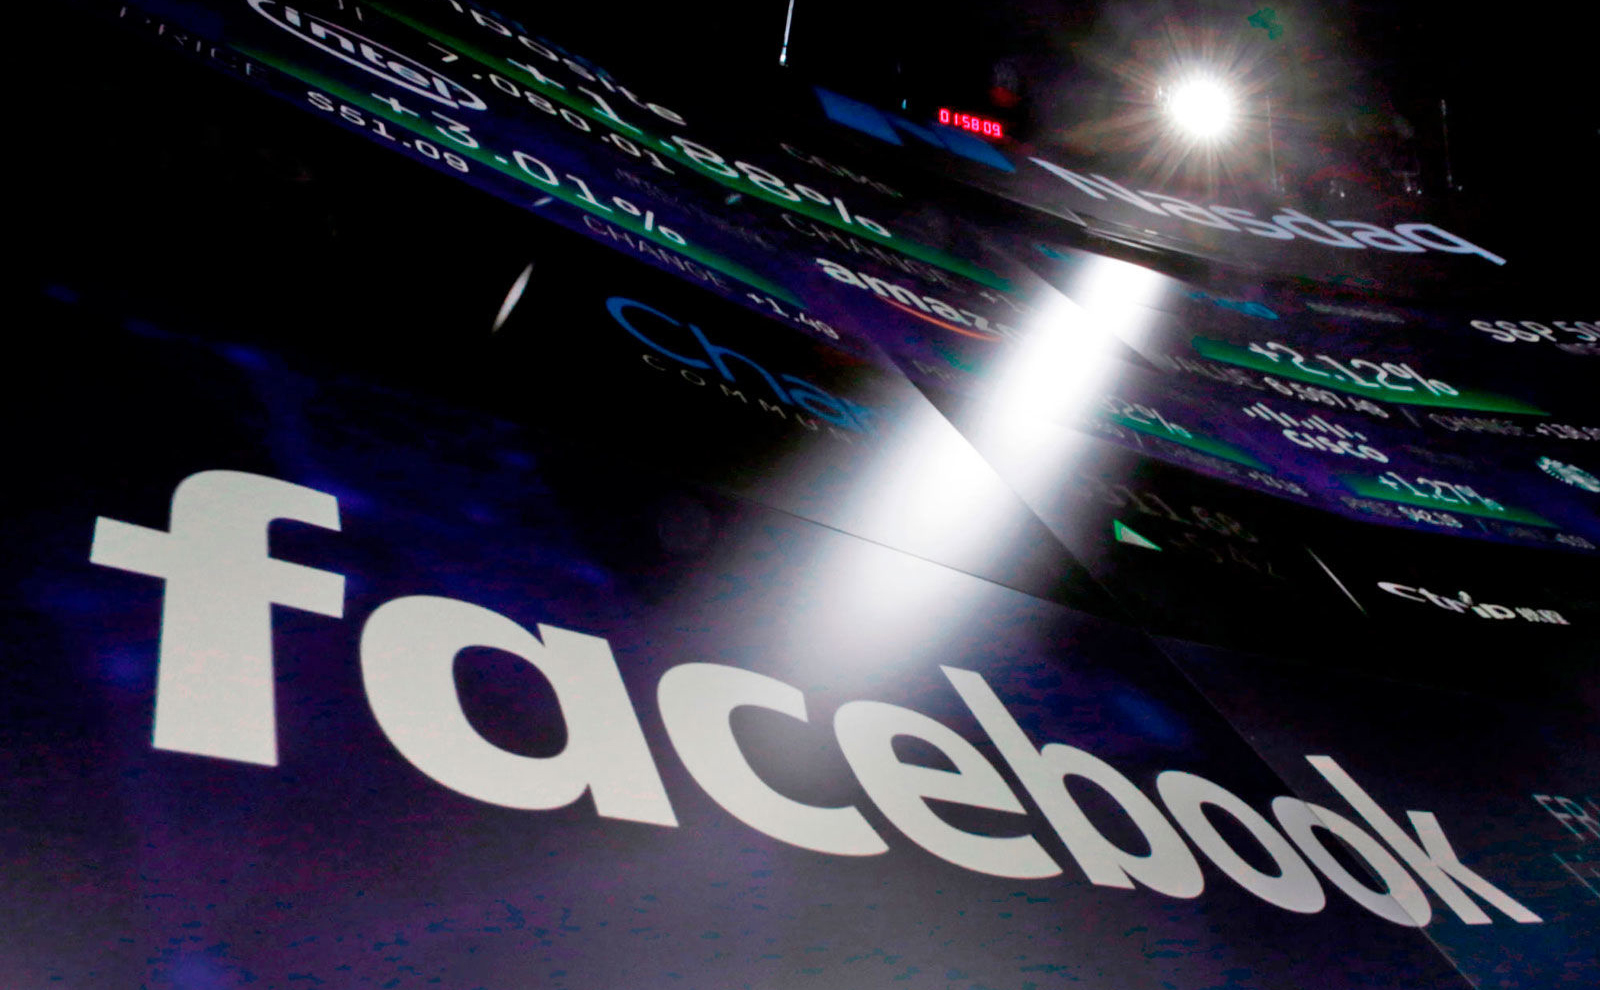 Facebook tăng trưởng chậm lại trong Q3/18, mất 1 triệu người dùng tại châu Âu